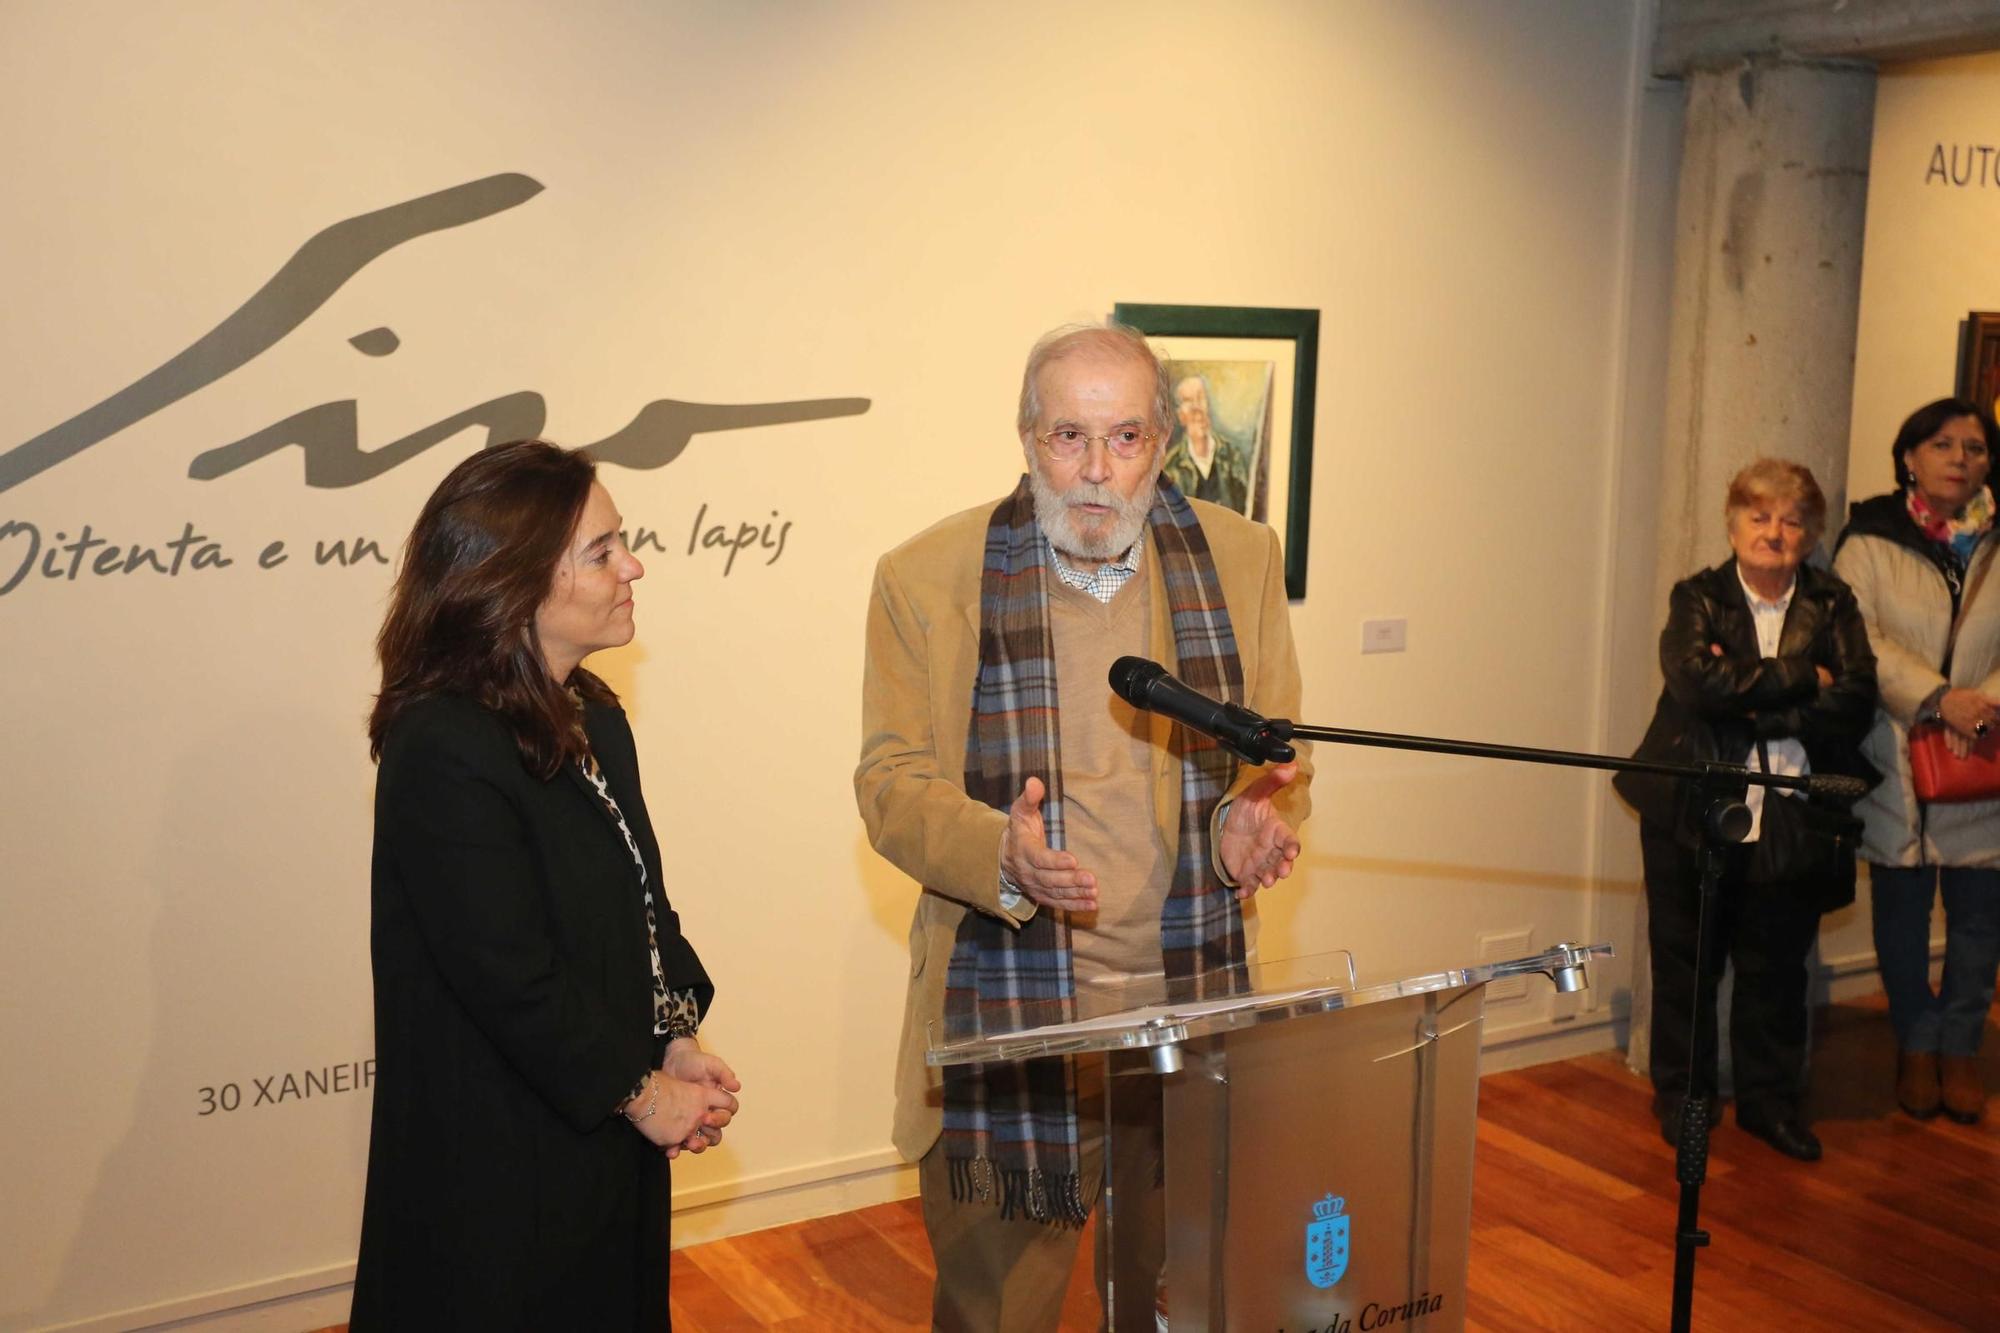 Exposición de Siro López en el Quiosco Alfonso de A Coruña